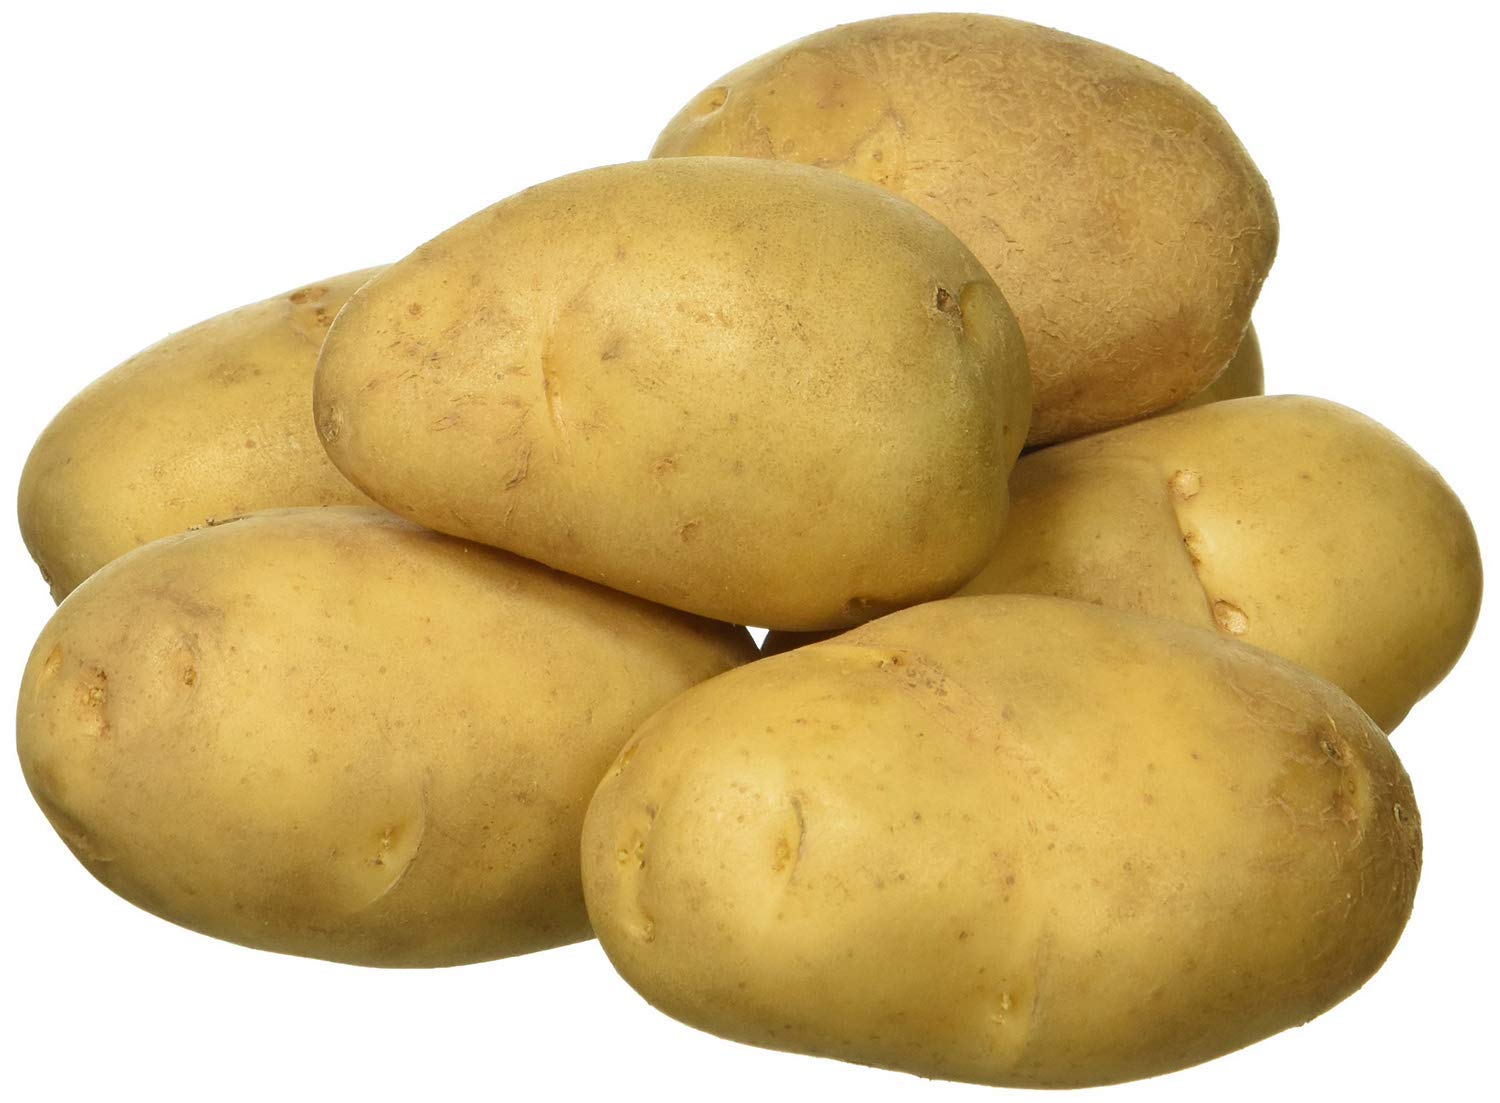 Potato/Batate/Aaloo